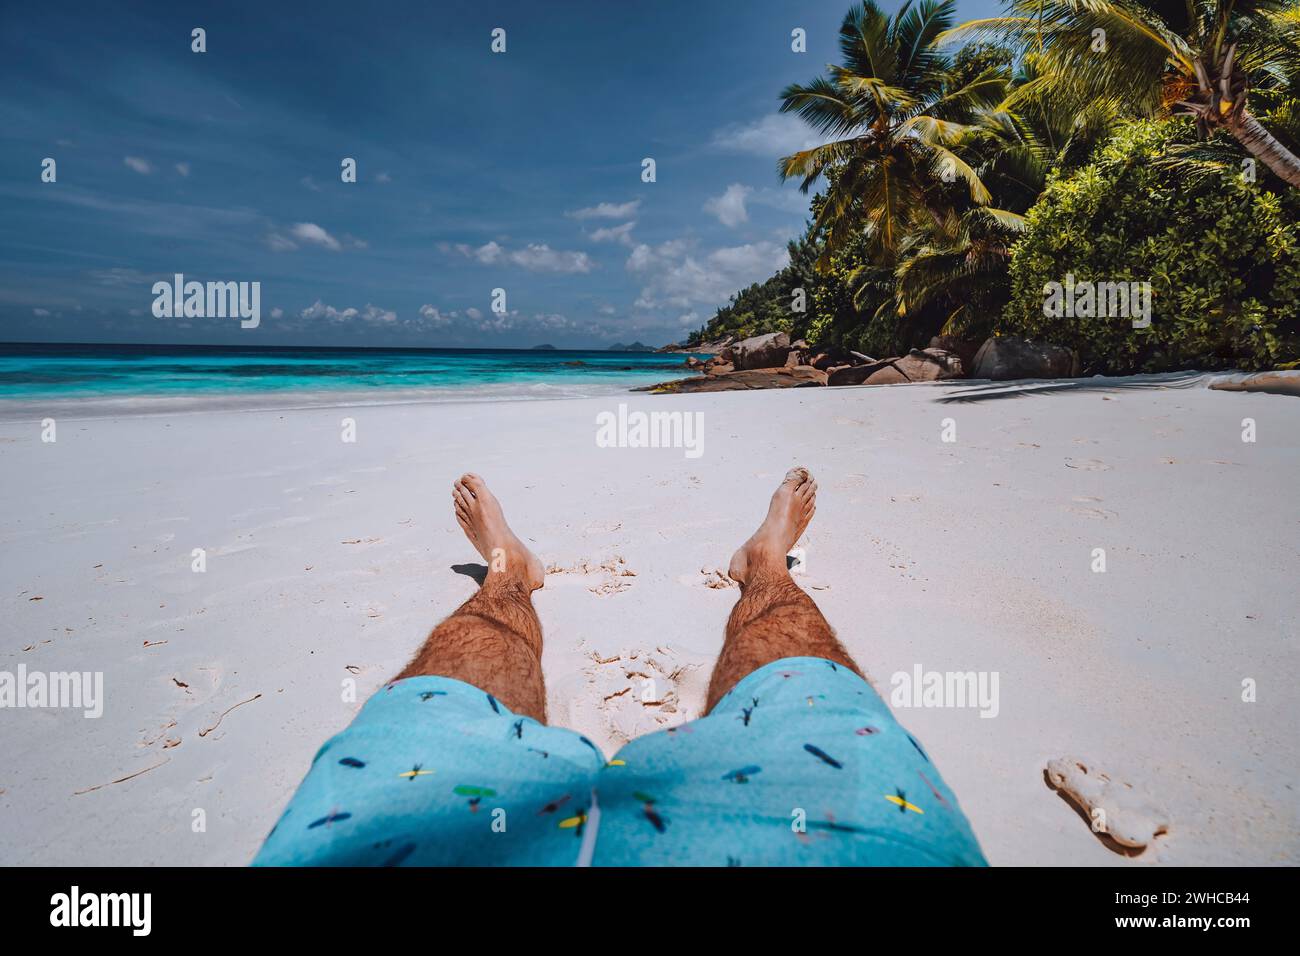 Männer tragen Badeshorts mit gebräunten Beinen am paradiesischen weißen Sand tropischen exotischen Strand mit Blick auf türkisblauem Meer. Reiseurlaub Urlaubskonzept. Stockfoto